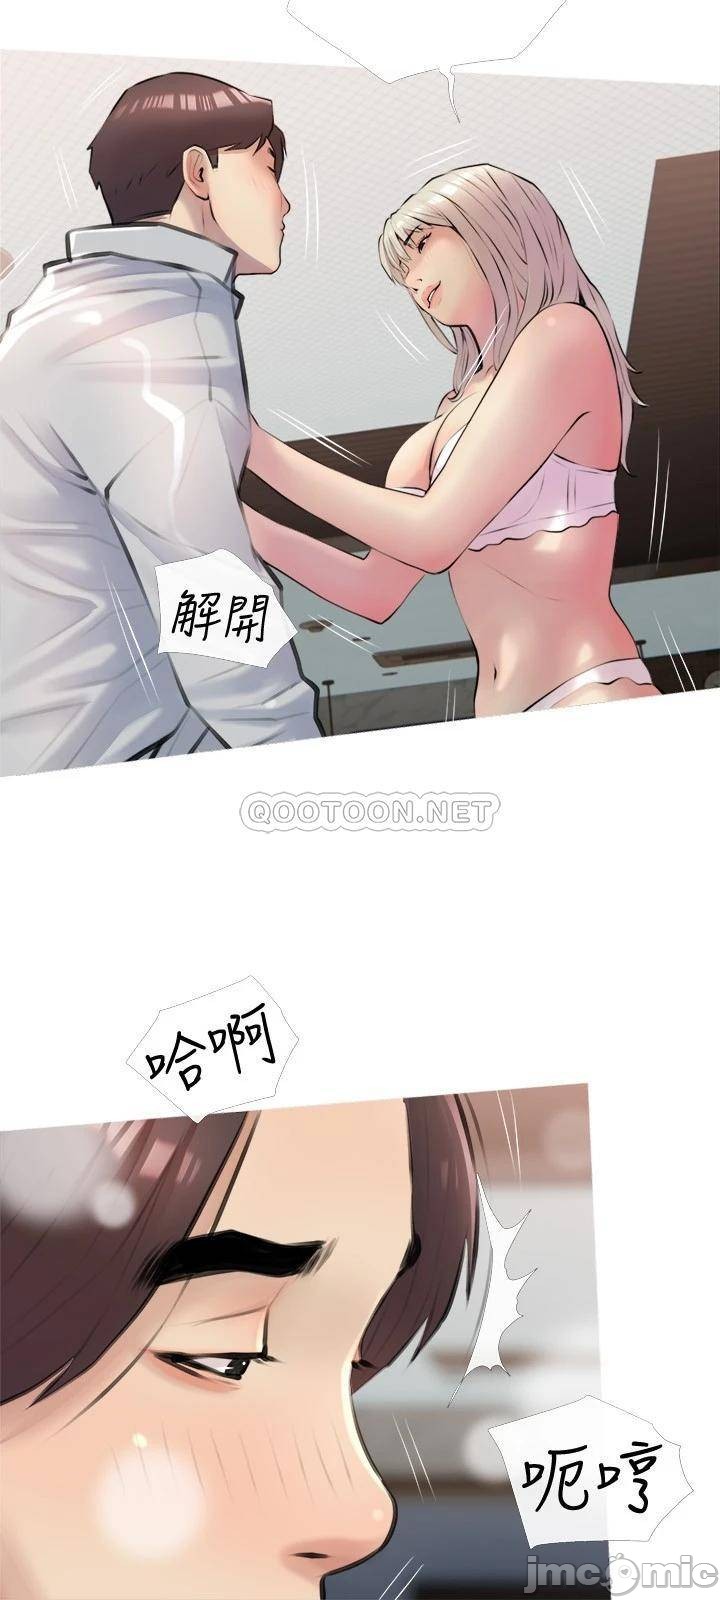 Read manga Obscene Private Lesson Raw - Chapter 16 - 0002161e8aaf93eaa0074 - ManhwaXXL.com